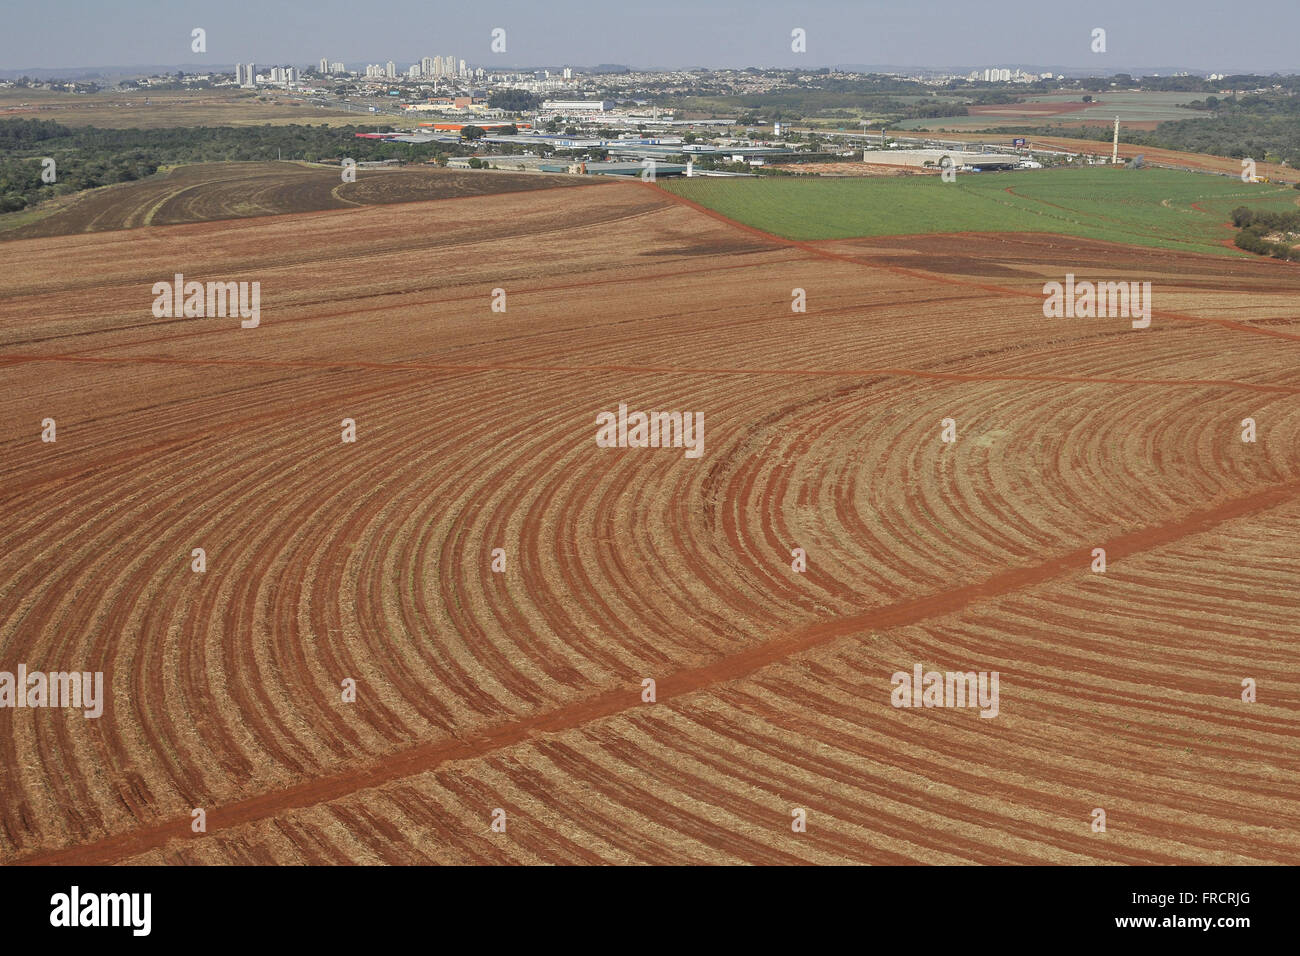 Vista aerea di terreno arato per la piantagione di zucchero di canna in campagna - lo sfondo area urbana Foto Stock